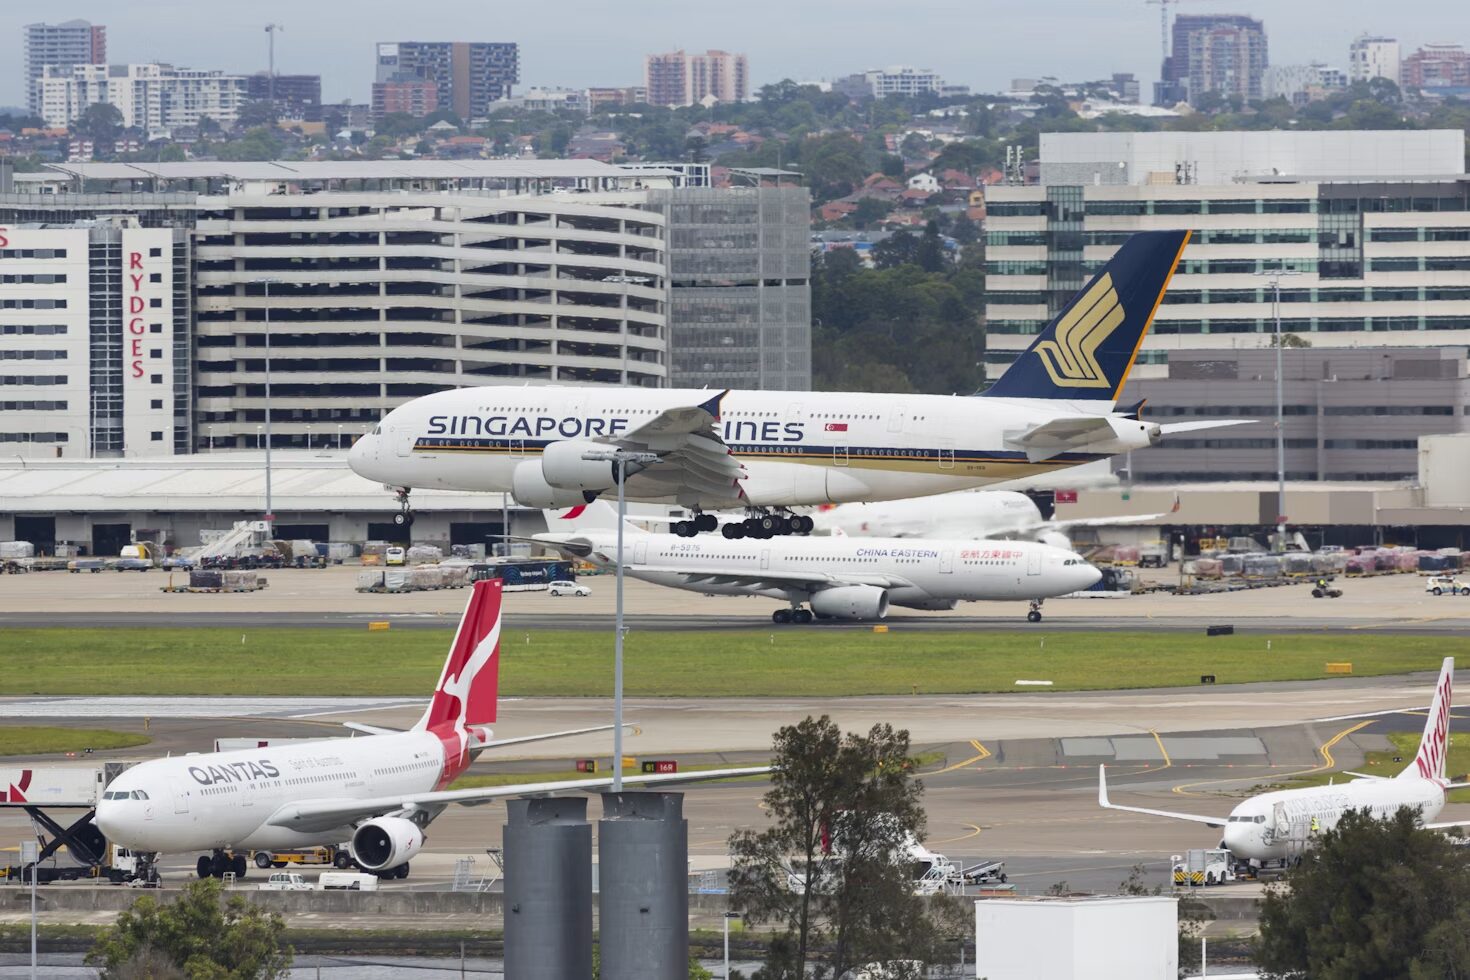 Imagen del Aeropuerto de Sydney, donde necesitarás tu visa para comenzar tu study and work in Australia